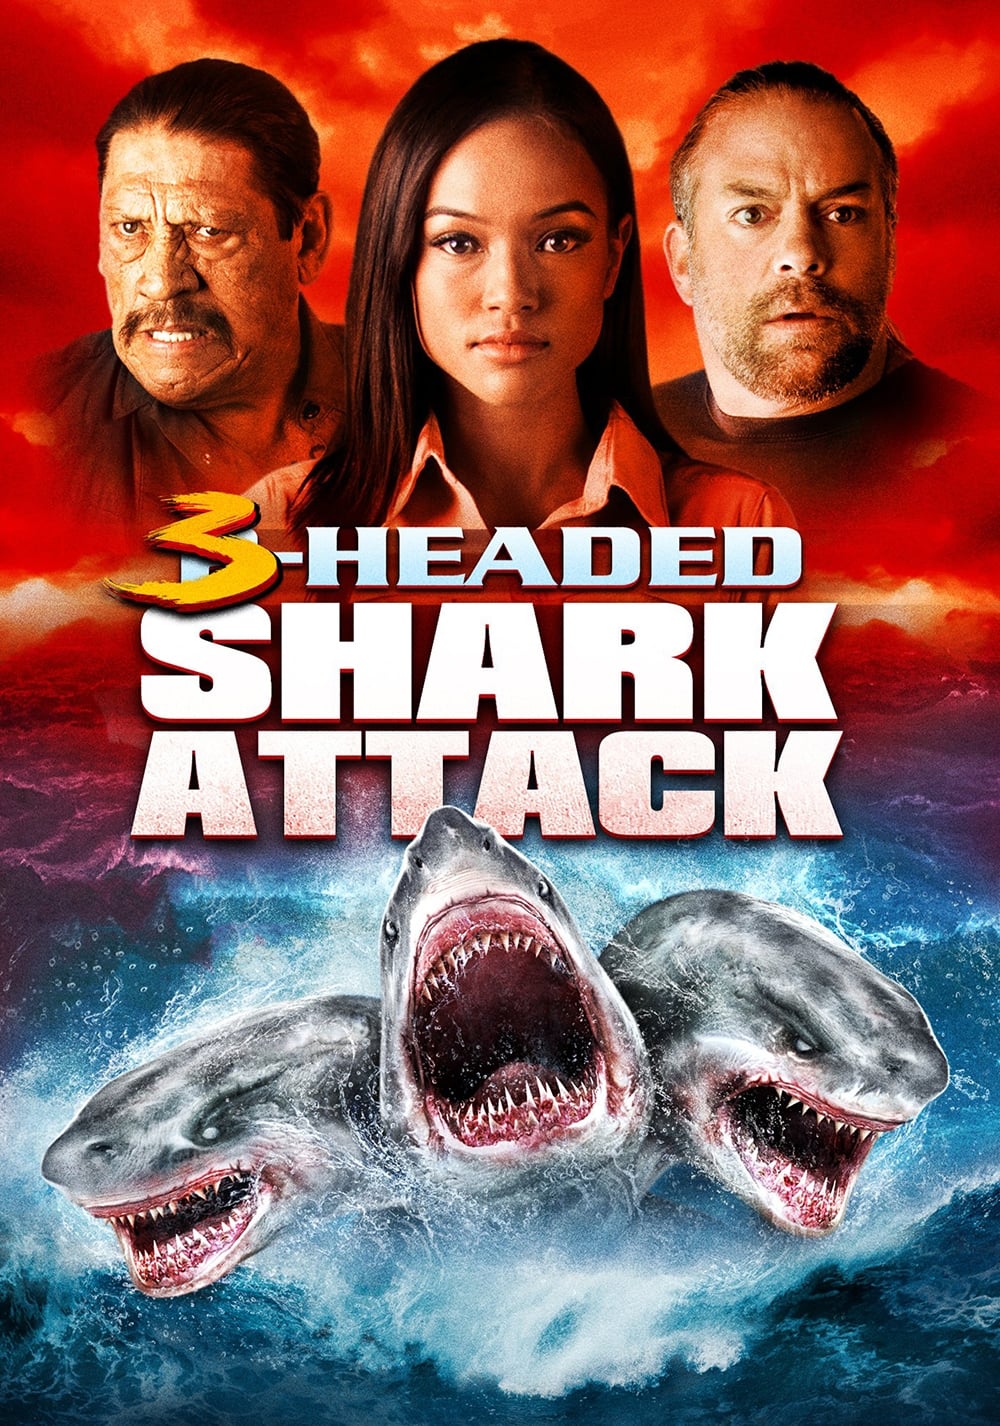 3 Headed Shark Attack [HD] (2015)﻿